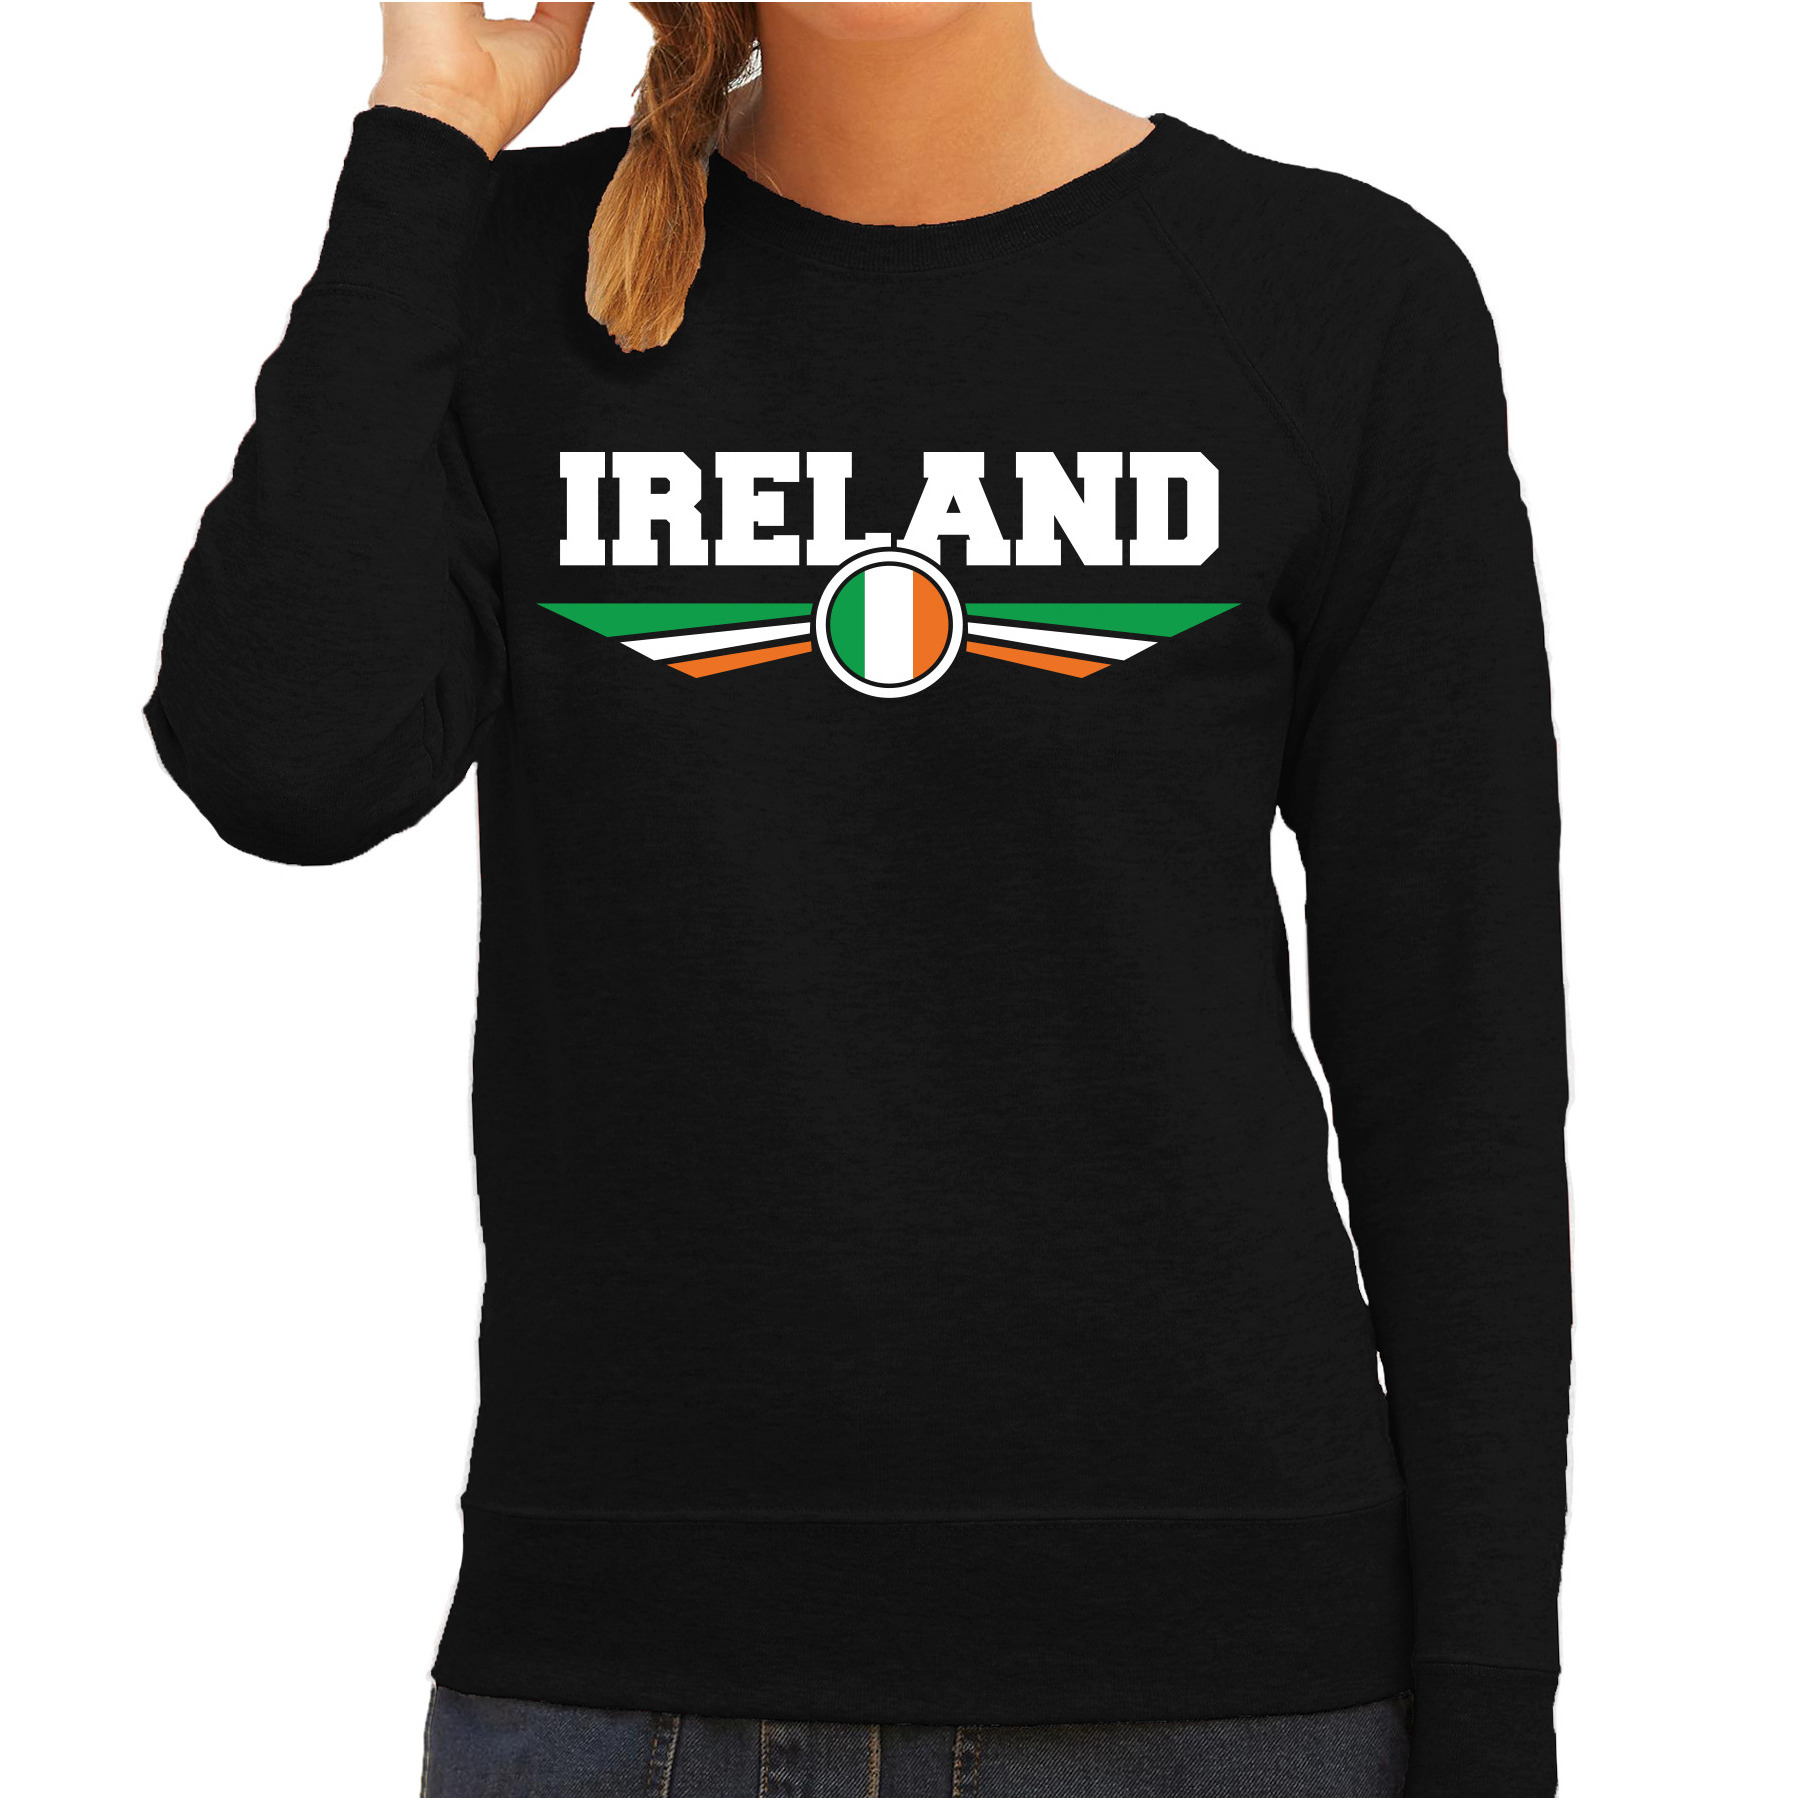 Ierland-Ireland landen sweater zwart dames